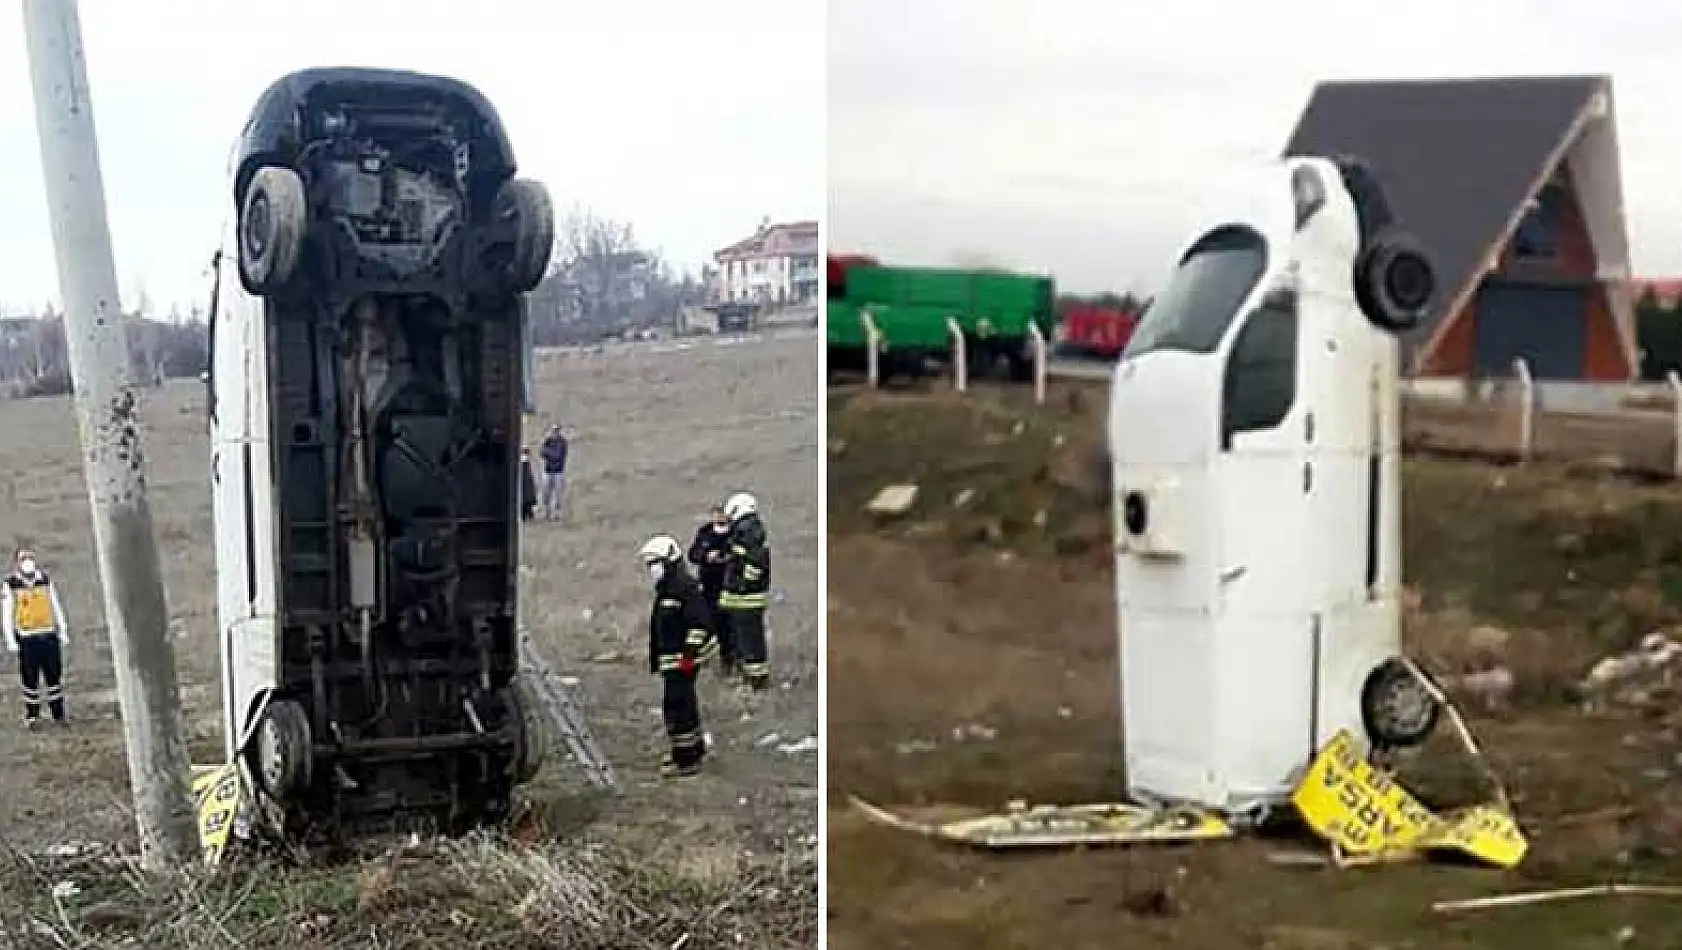 Konya'da akıllara durgunluk veren kaza! Şaha kalkan otomobil böyle kaldı